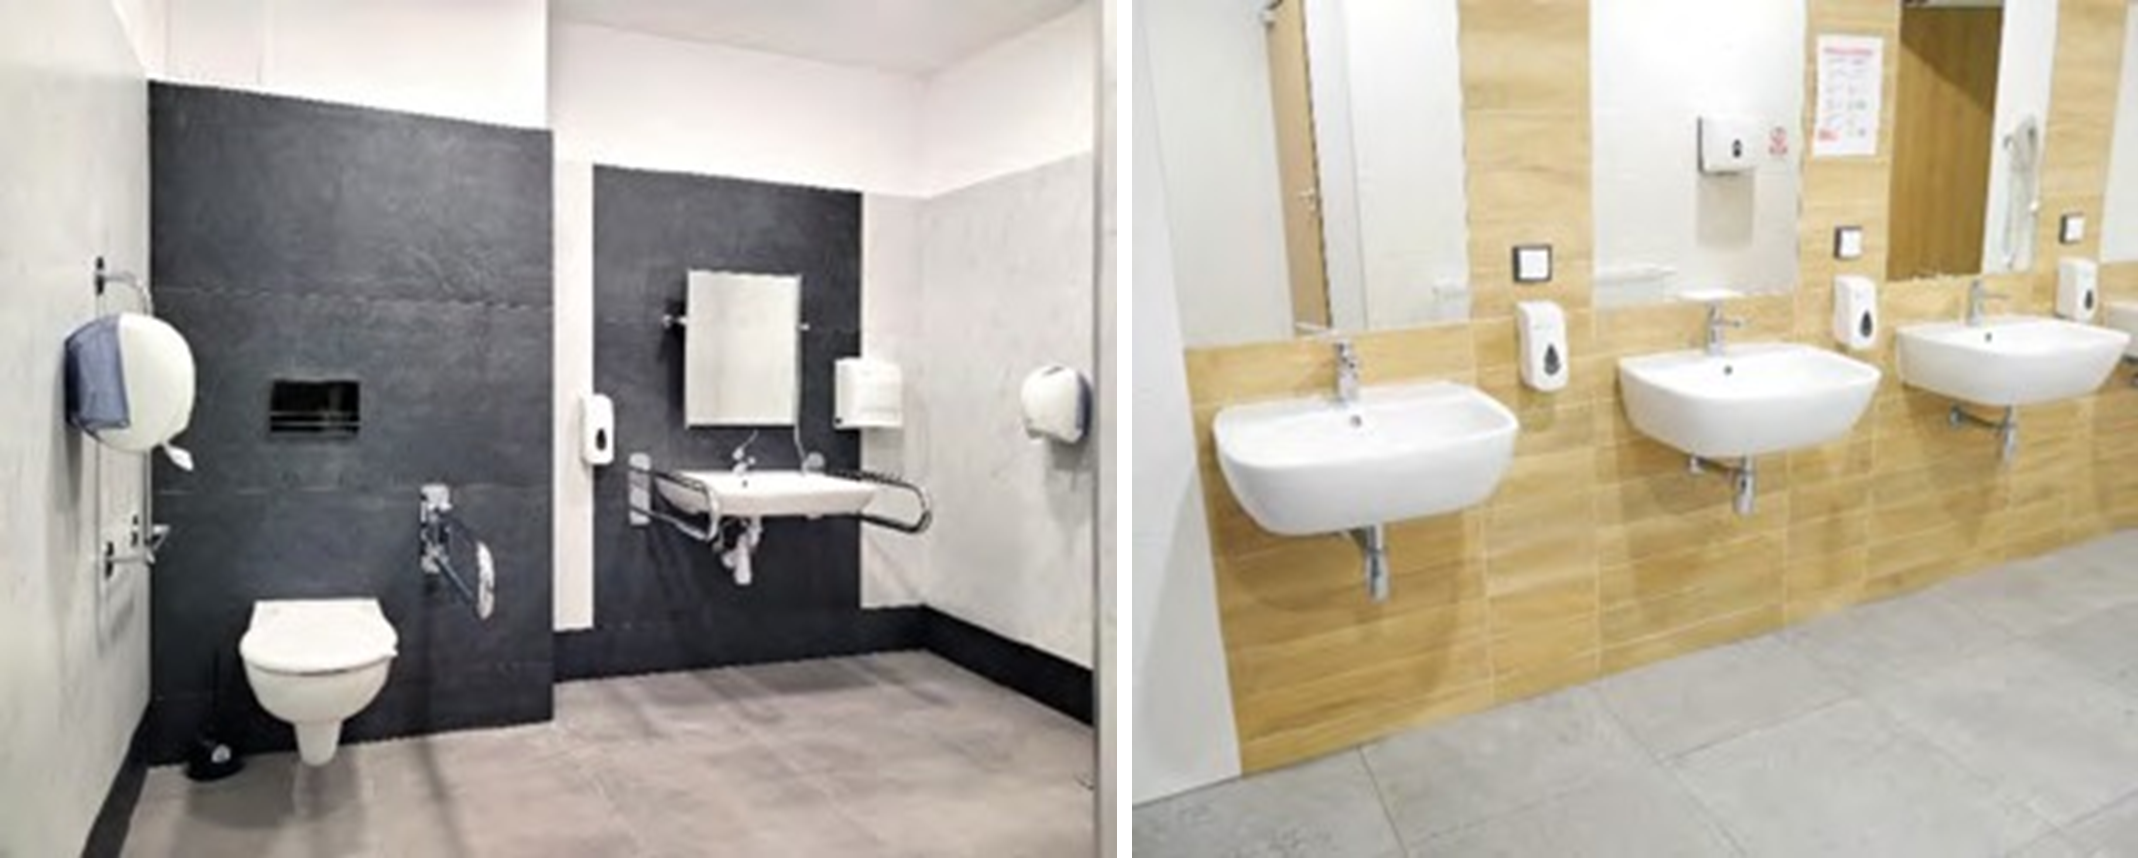 Przykład zastosowania kontrastów kolorystycznych w pomieszczeniach sanitarnych